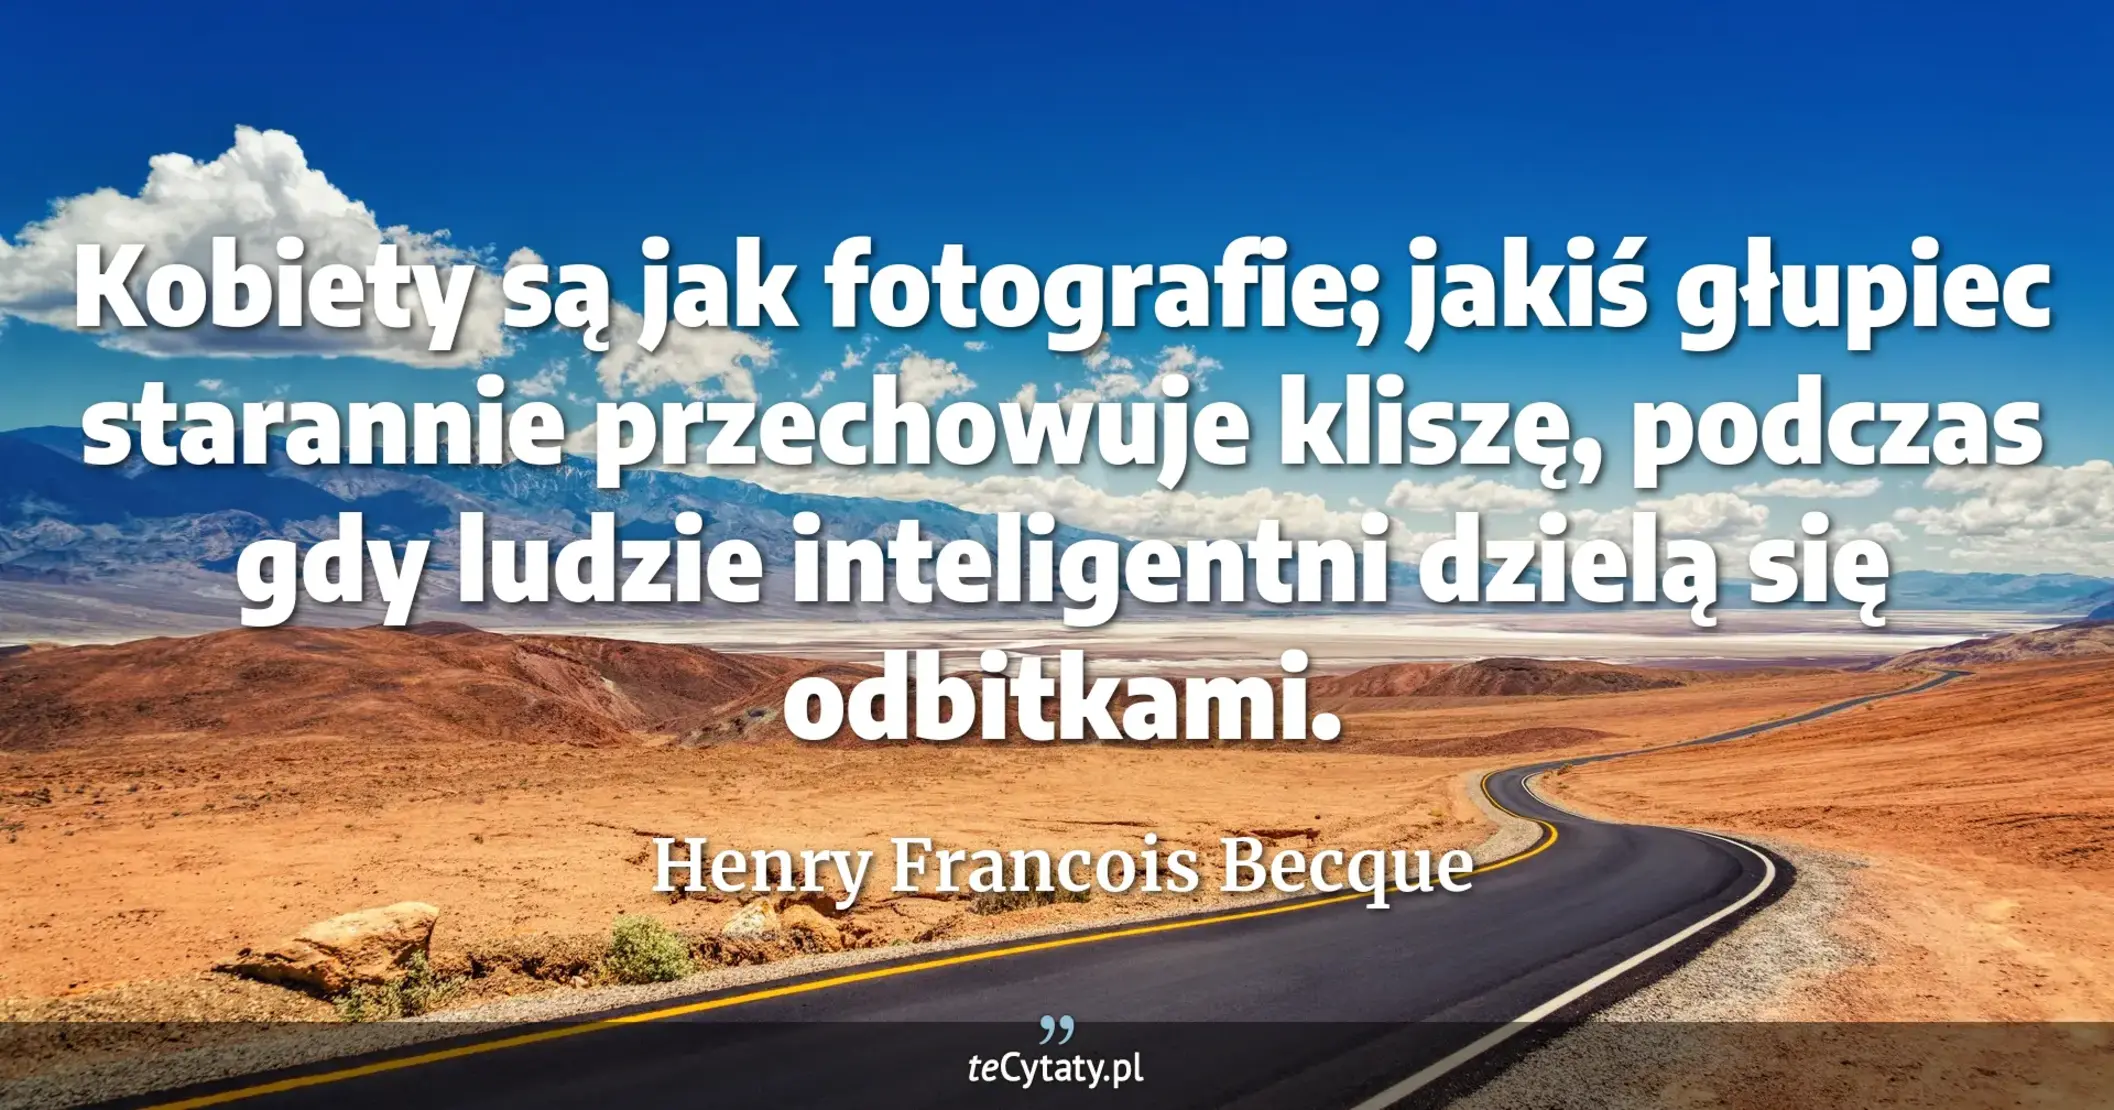 Kobiety są jak fotografie; jakiś głupiec starannie przechowuje kliszę, podczas gdy ludzie inteligentni dzielą się odbitkami. - Henry Francois Becque